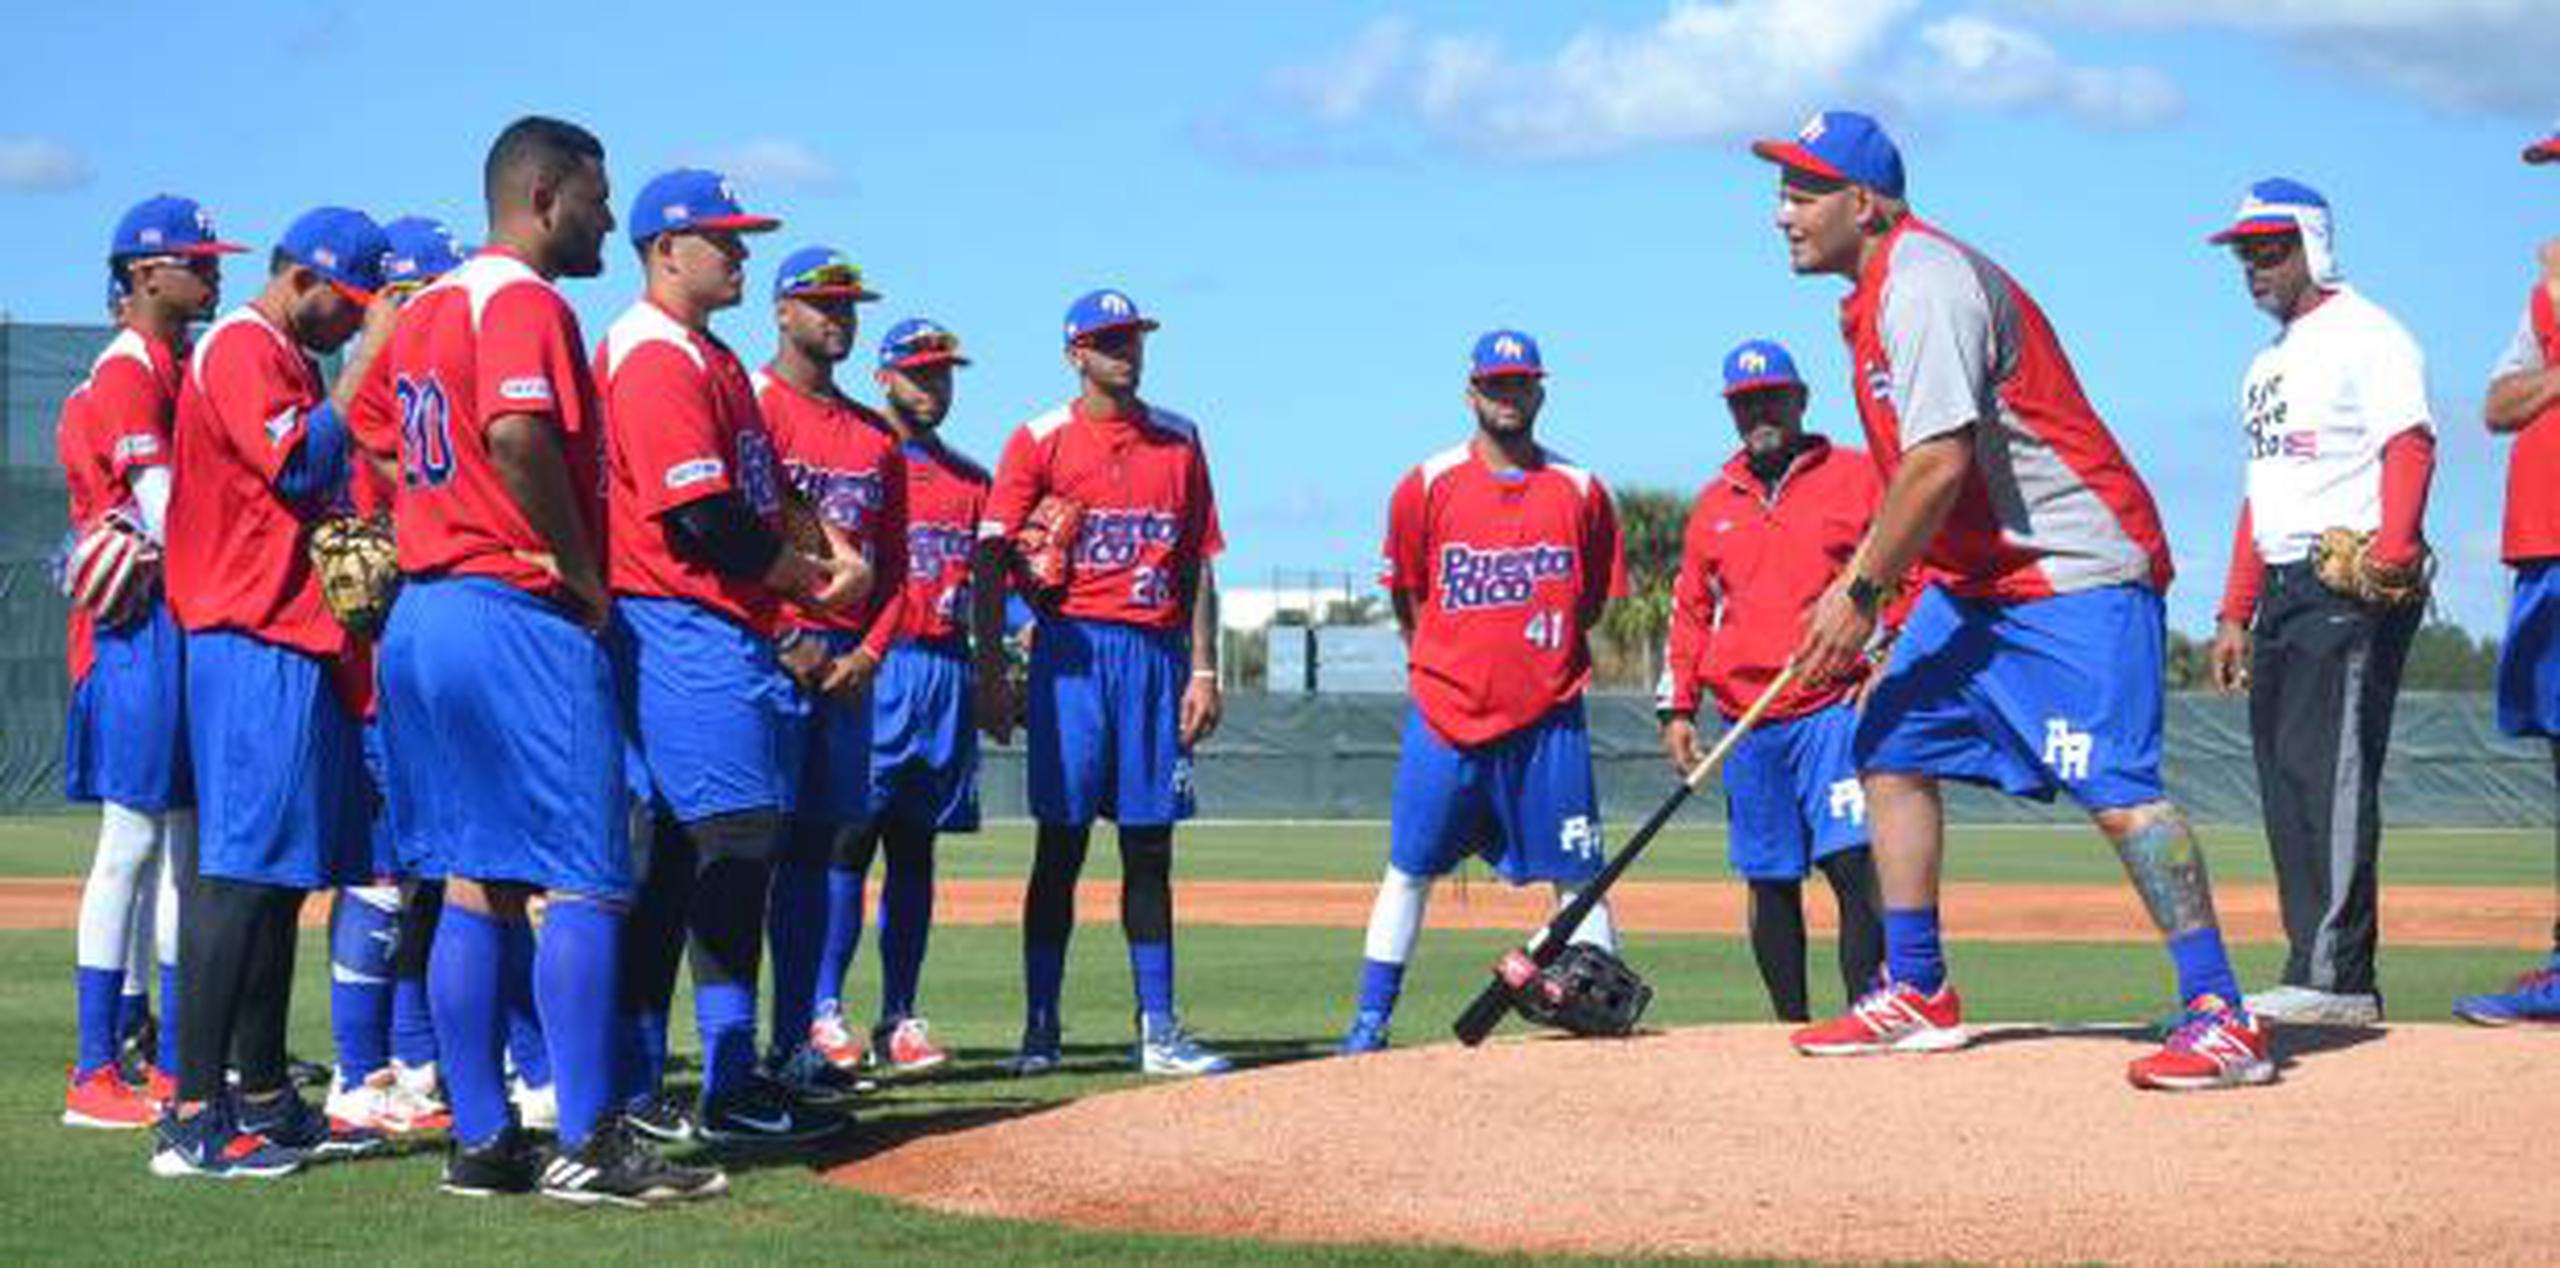 El equipo puertorriqueño comenzará sus prácticas esta semana en el complejo de entrenamiento de los Cardenales de San Luis, en el estado de Florida. (Suministrada)